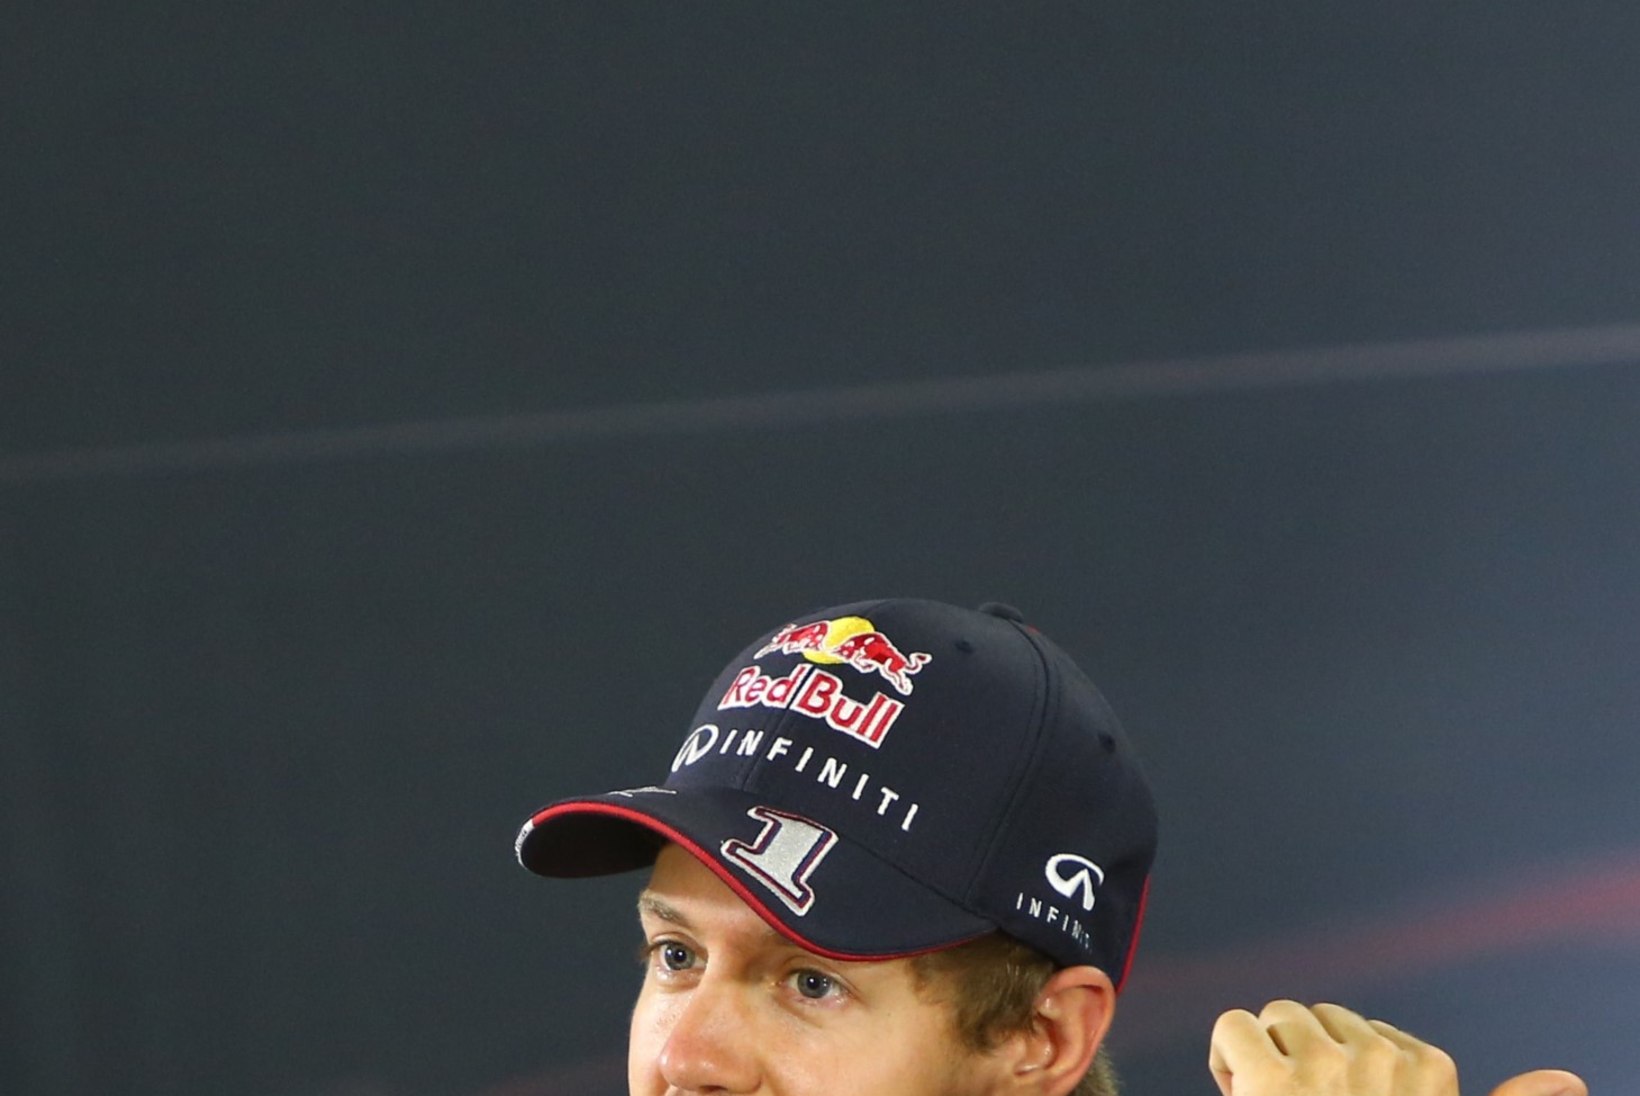 HAKKAB PIHTA: saladuste lekkimist kartev Red Bull ei luba Vettelil Ferrarit testida